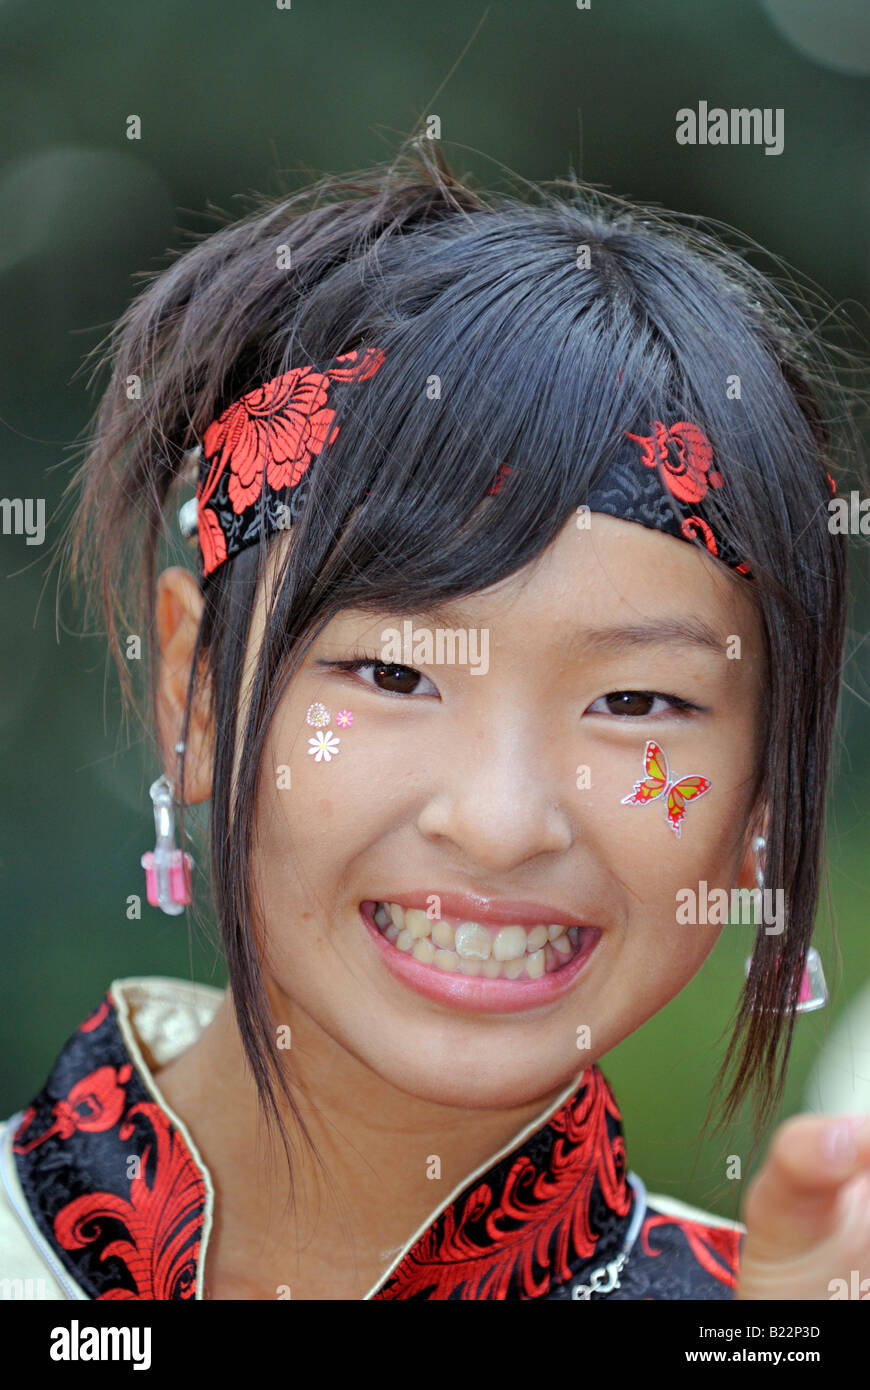 Japanisches Mädchen Stirnband mit bemaltem Gesicht bei Michinoku YOSAKOI  Festival Sendai, Japan Stockfotografie - Alamy